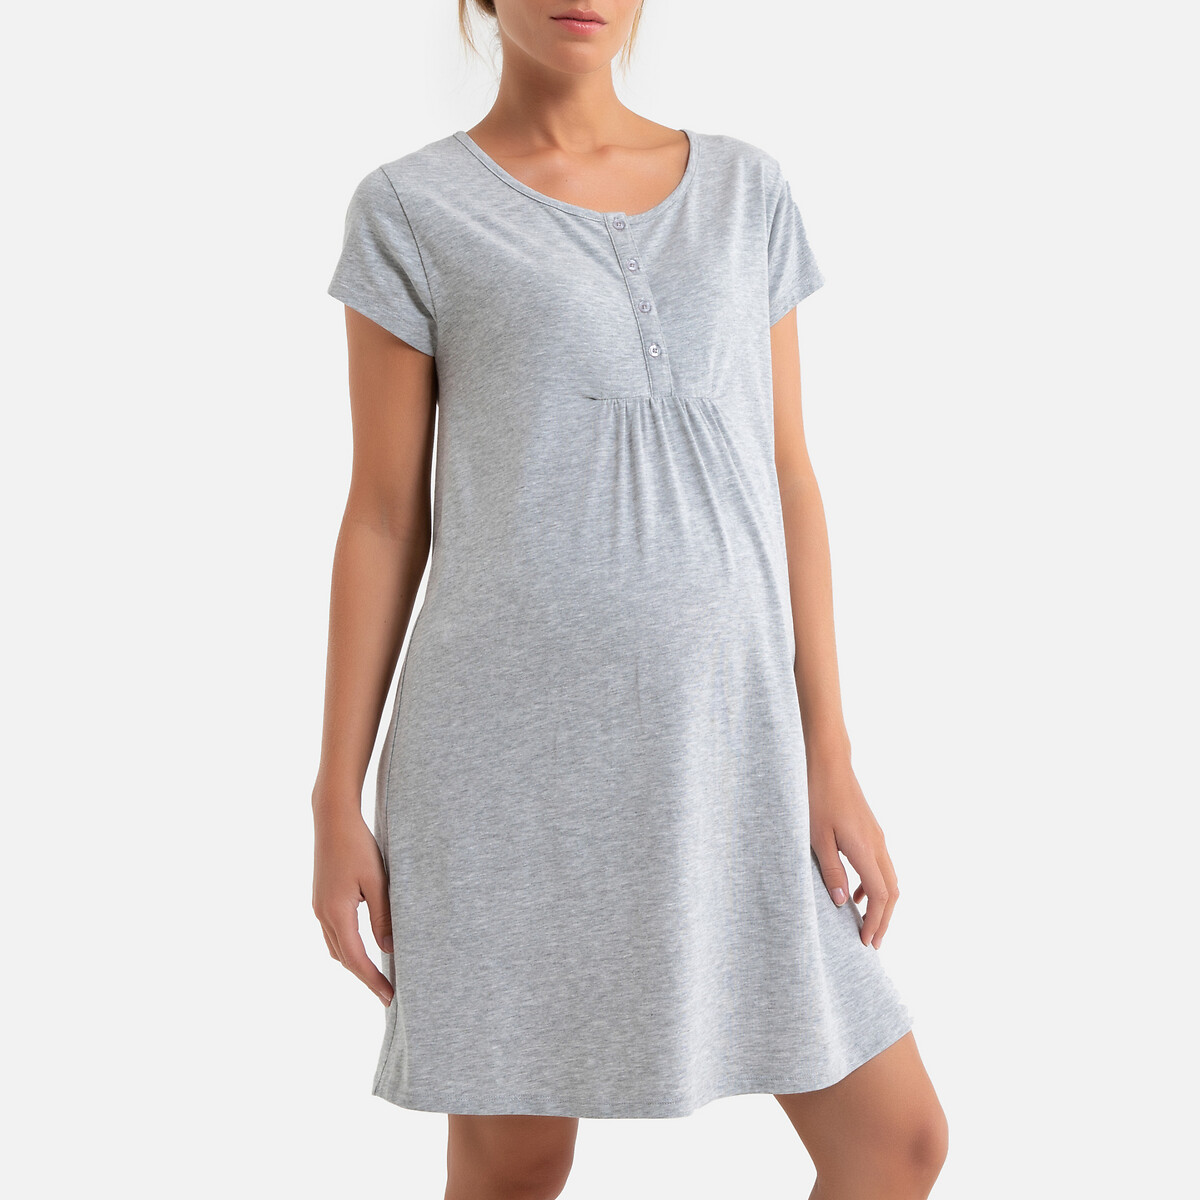 Рубашка La Redoute Ночная для периода беременности и грудного вскармливания 50/52 (FR) - 56/58 (RUS) серый, размер 50/52 (FR) - 56/58 (RUS)